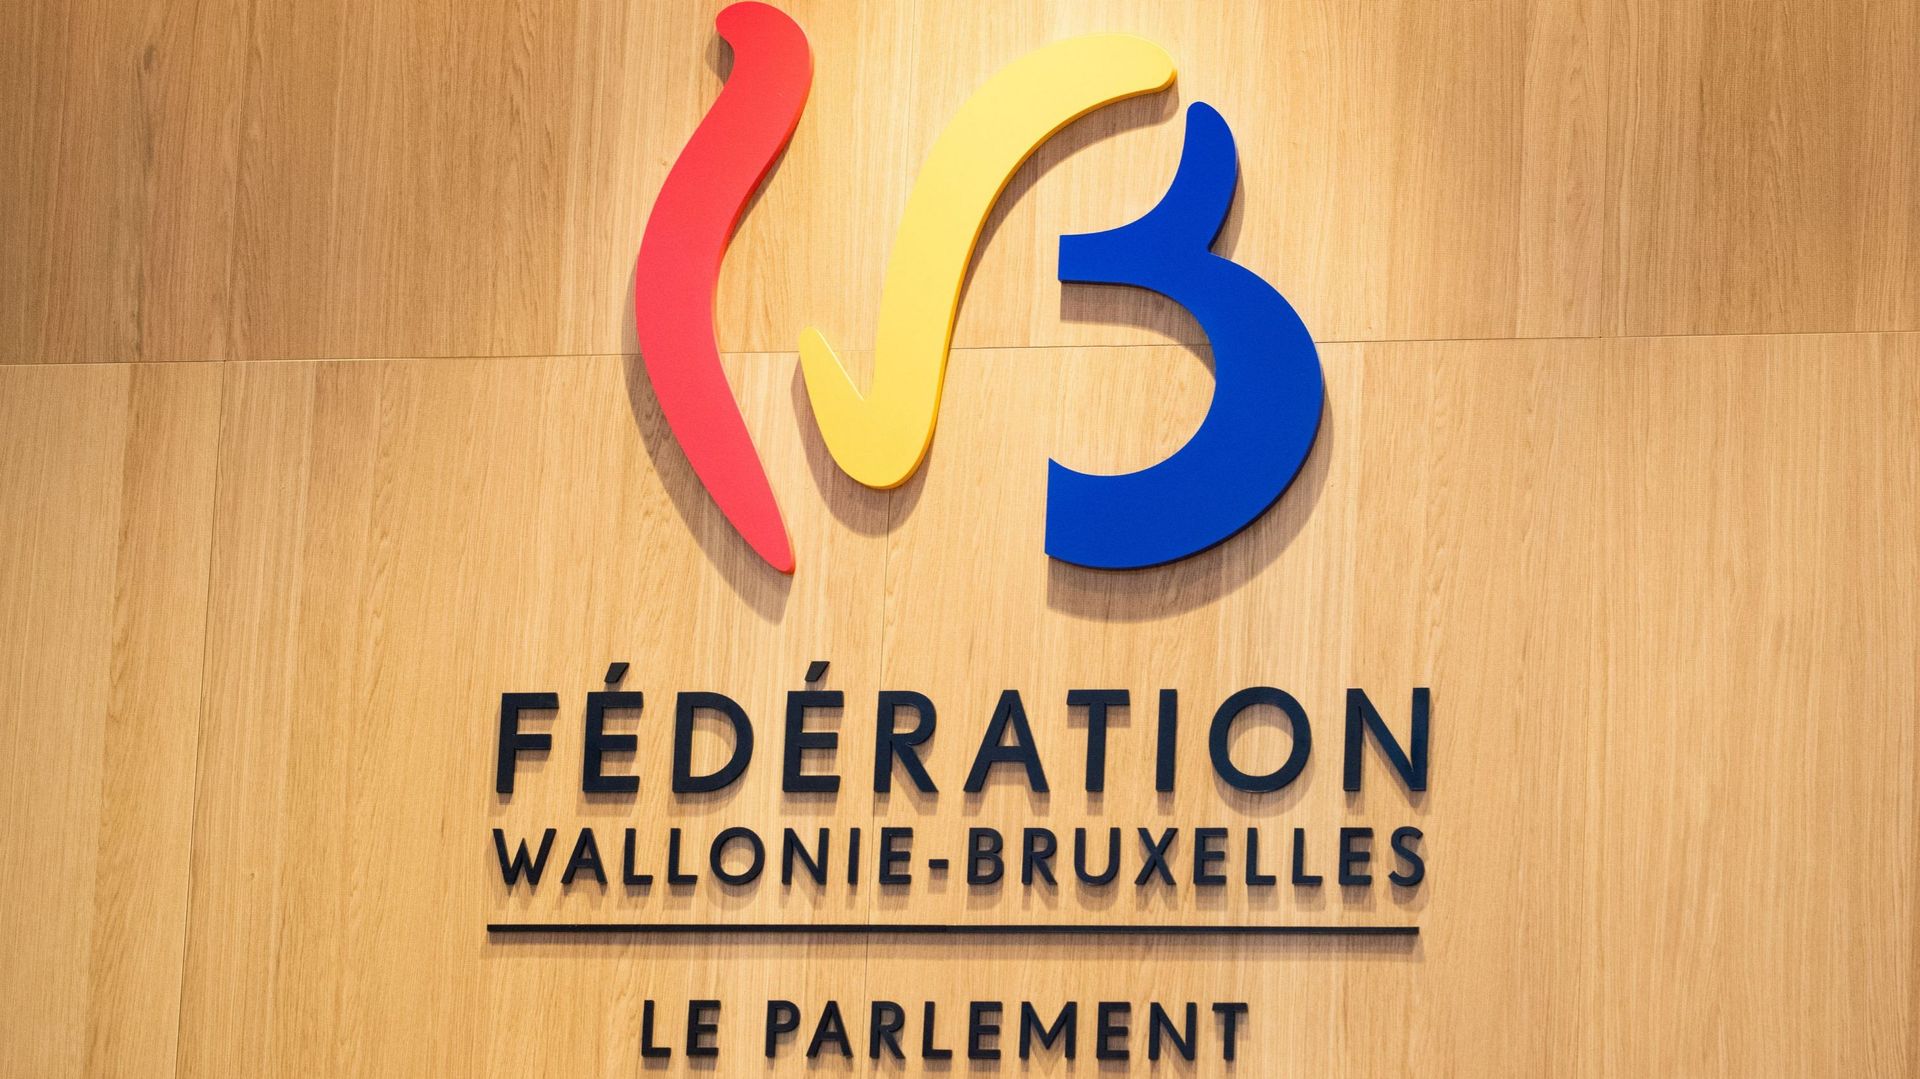 Quel avenir pour une Fédération Wallonie-Bruxelles dont les finances sont sous pression ?